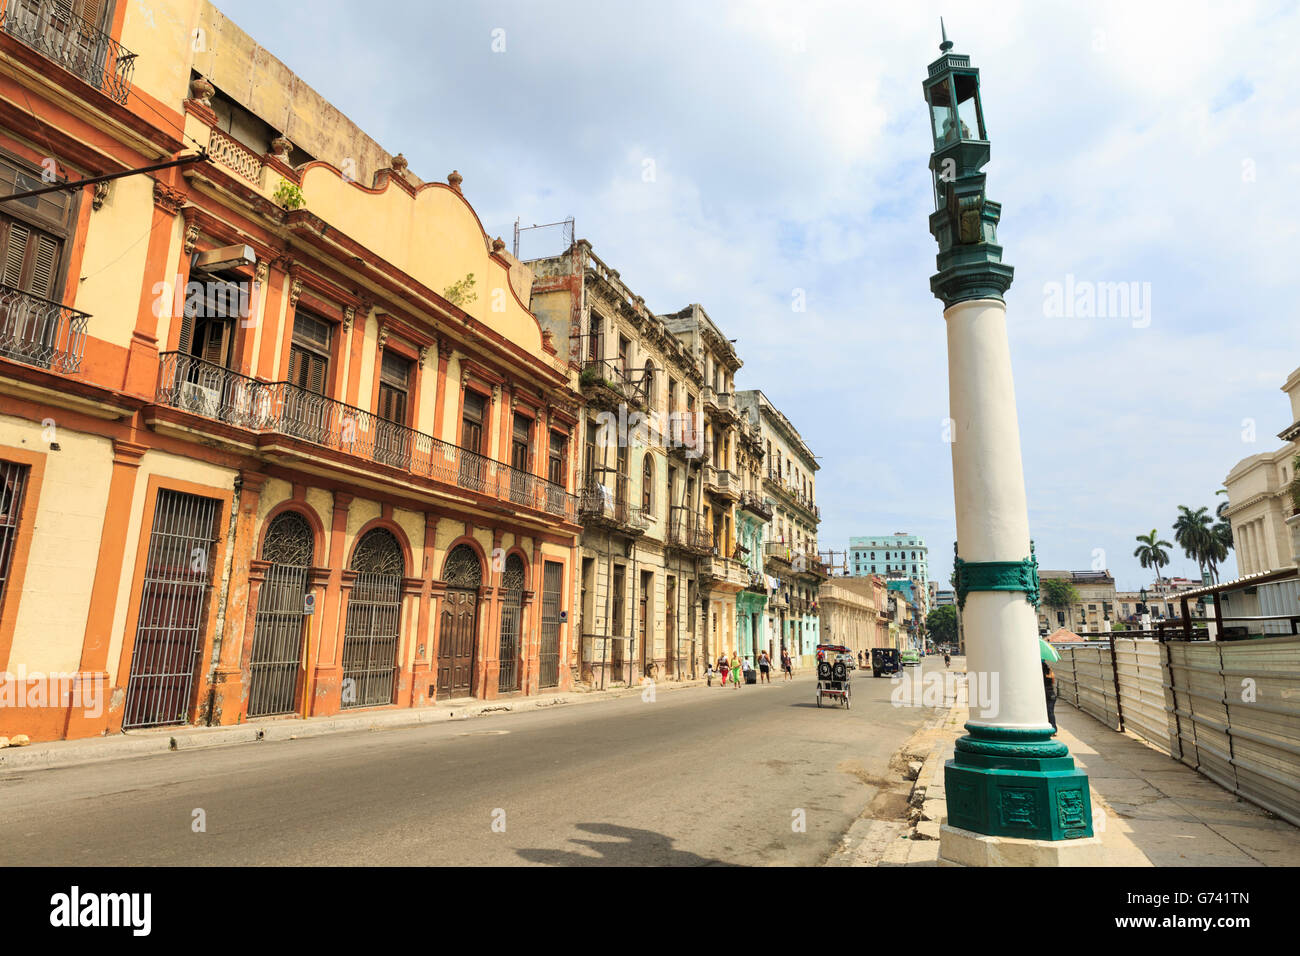 Patargas (aus) Zigarrenfabrik und angrenzende Gebäude, ein Wahrzeichen und beliebte Touristenattraktion in zentralen Havanna, Kuba Stockfoto